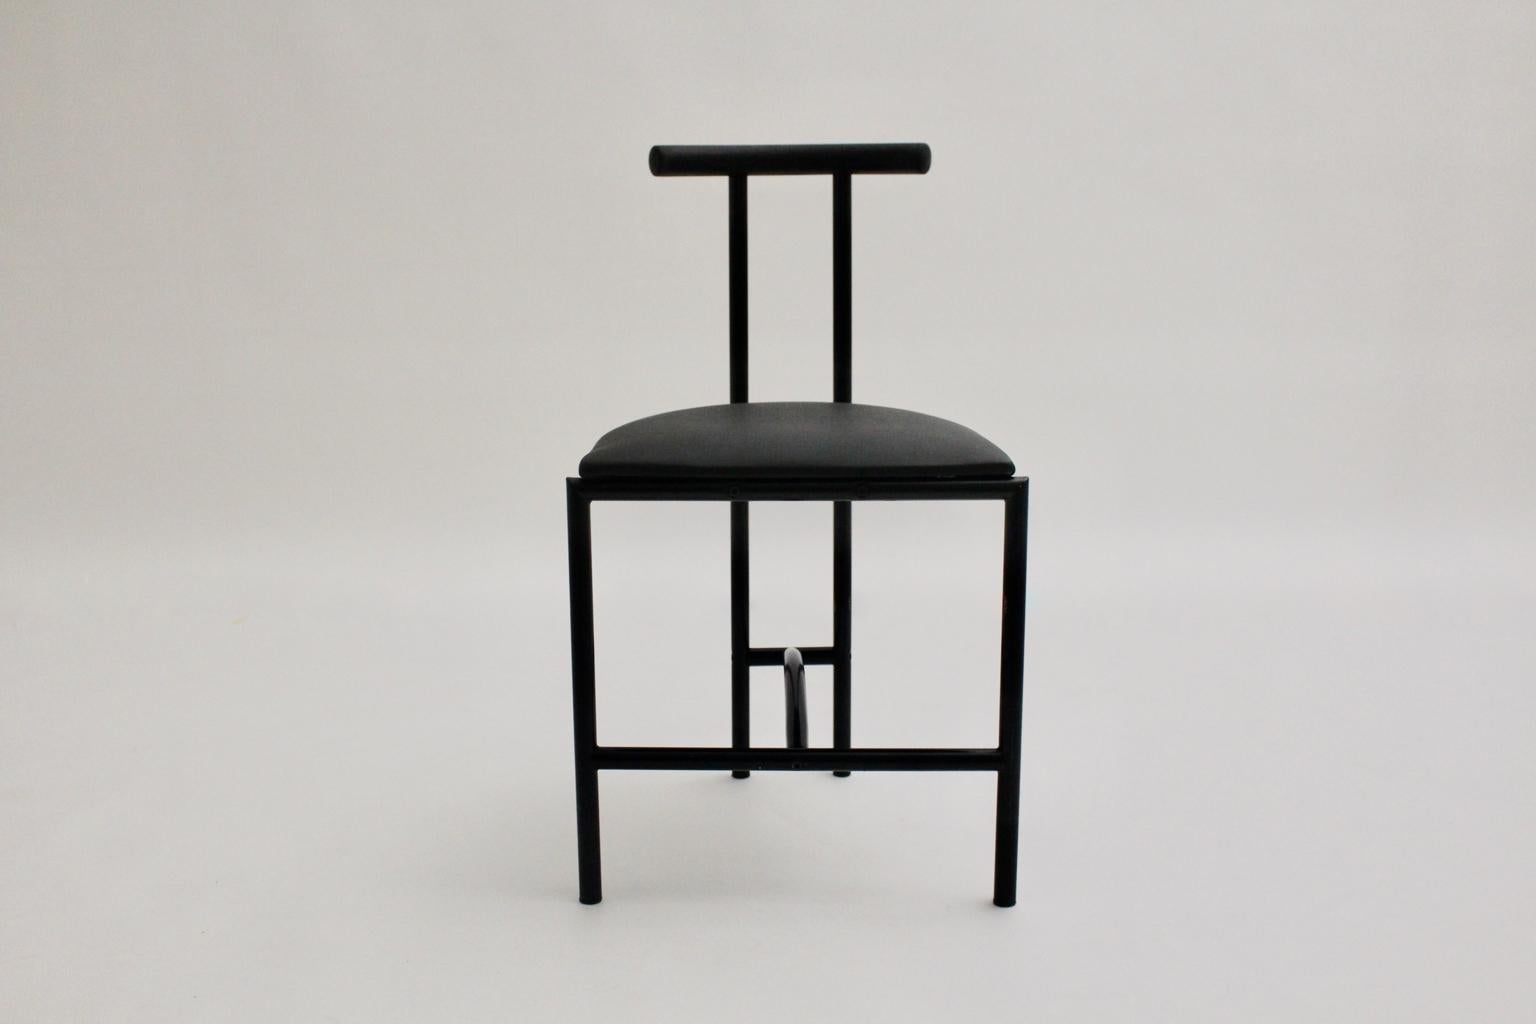 Der moderne Vintage-Stuhl wurde von Rodney Kinsman 1985 in Großbritannien entworfen und besteht aus schwarz lackiertem Stahlrohr und einem bezogenen Sitz aus schwarzem Kunstleder.
Sehr guter Vintage-Zustand
Ungefähre Maße:
Breite 43,5 cm
Tiefe 41